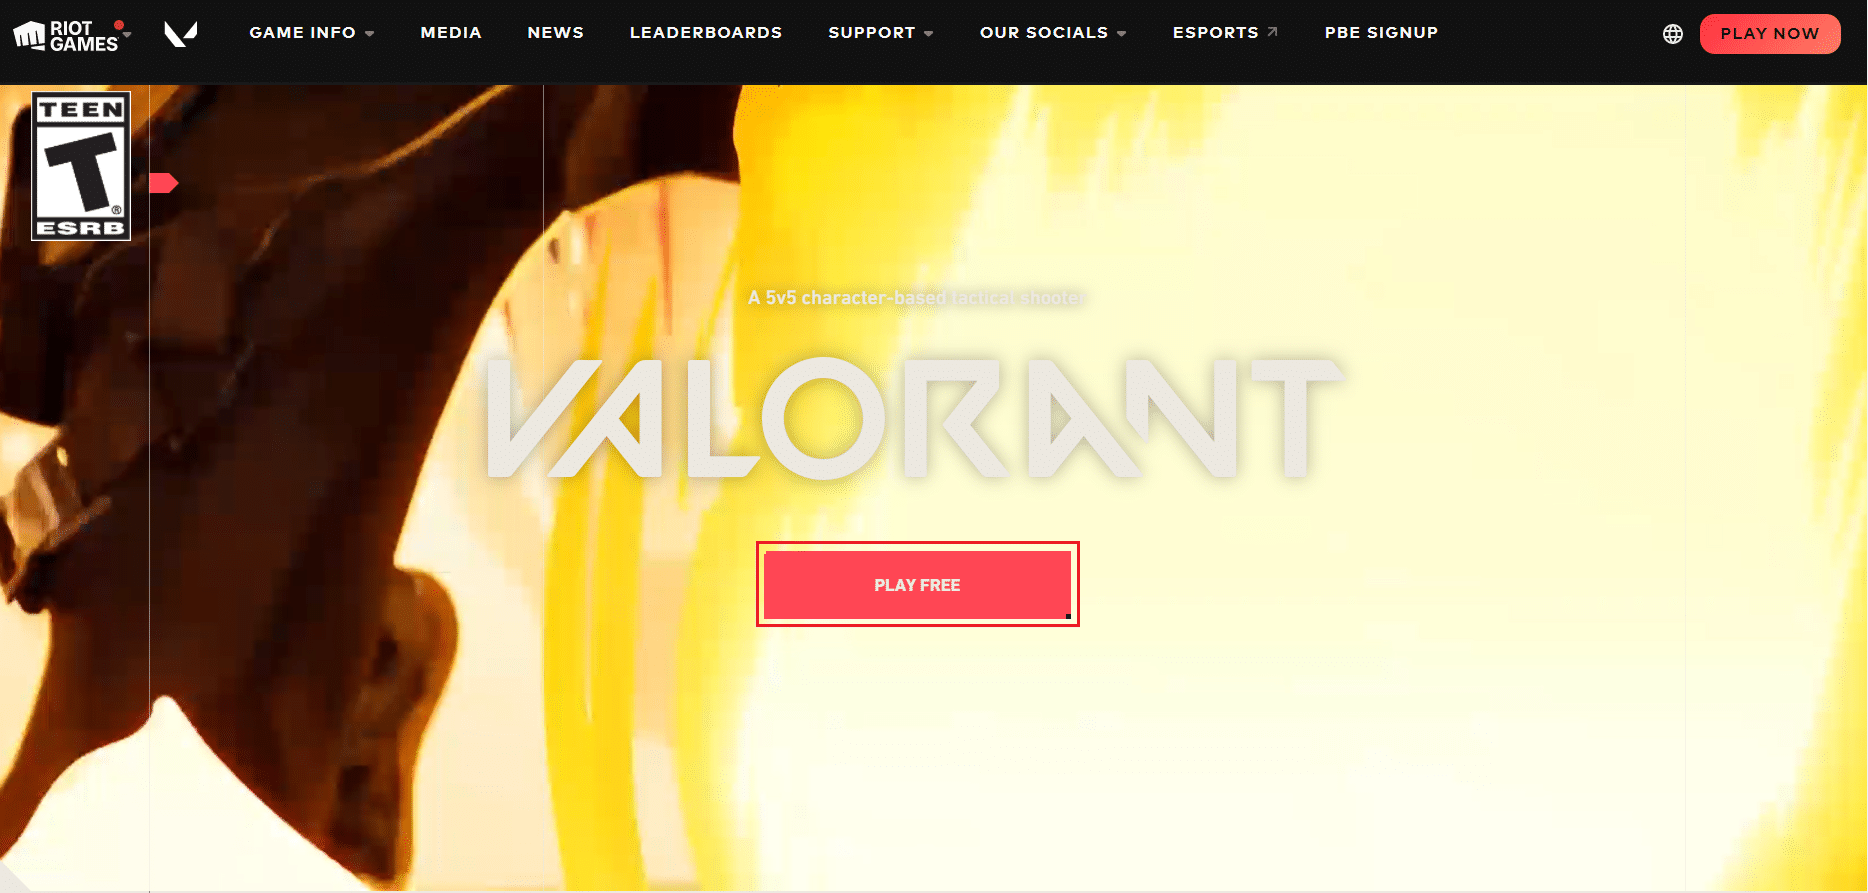 Pagina oficială de descărcare a Valorant